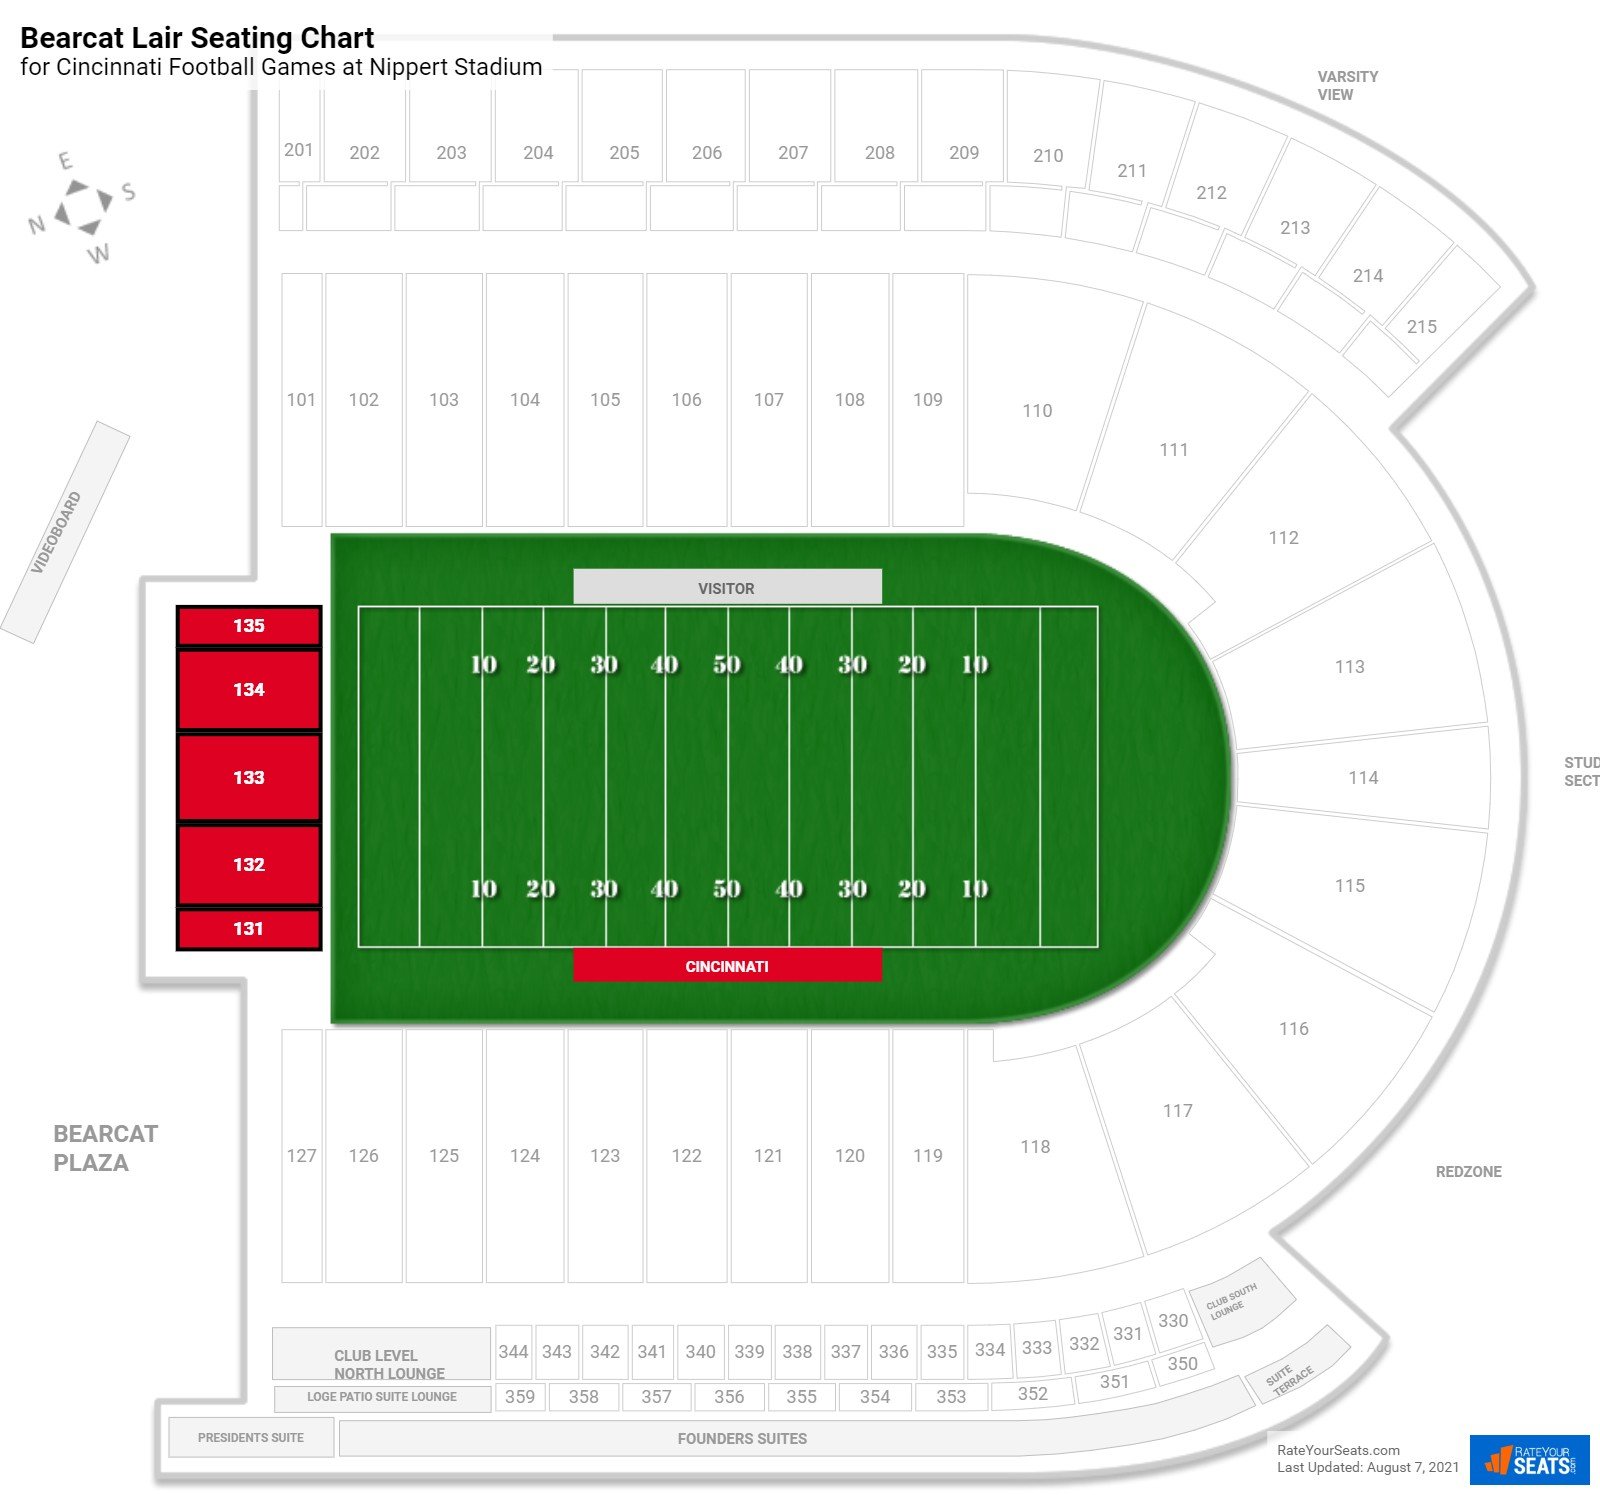 Cincinnati Bearcat Lair Seating Chart at Nippert Stadium